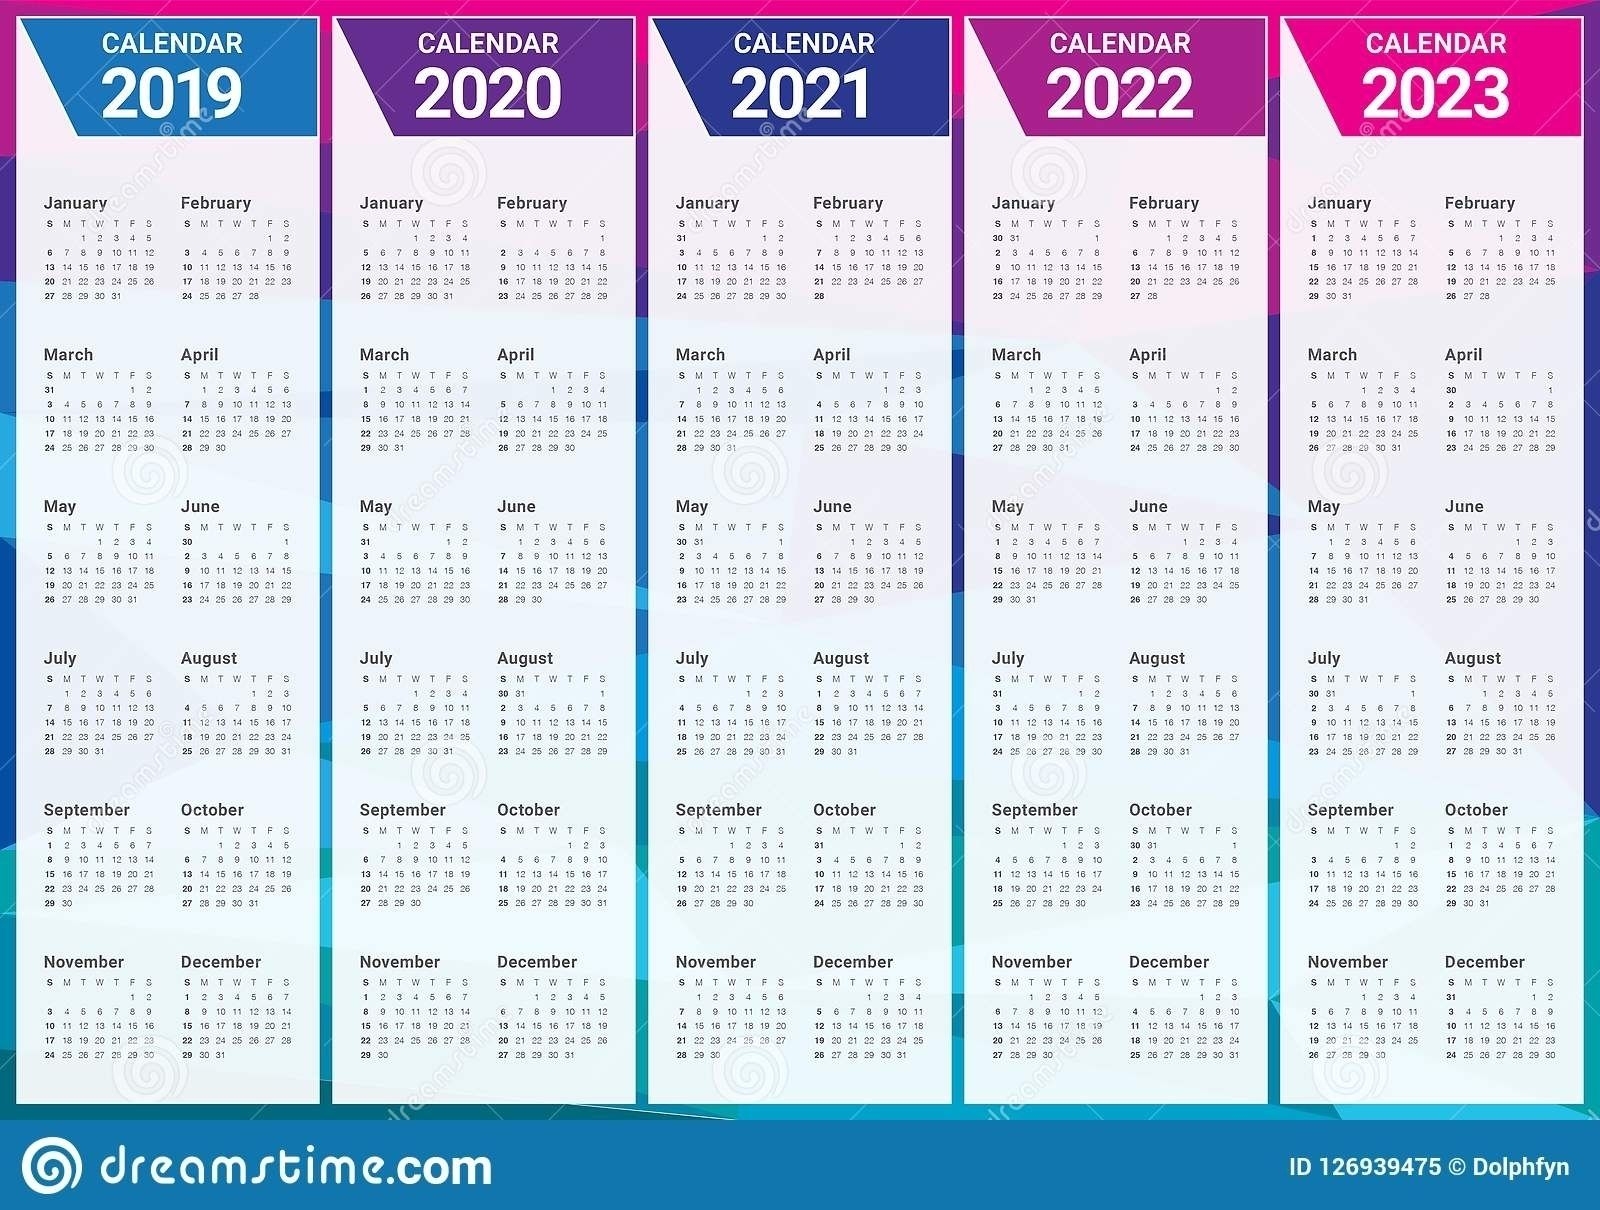 Calendar For 2021 2022 2023 | Ten Free Printable Calendar